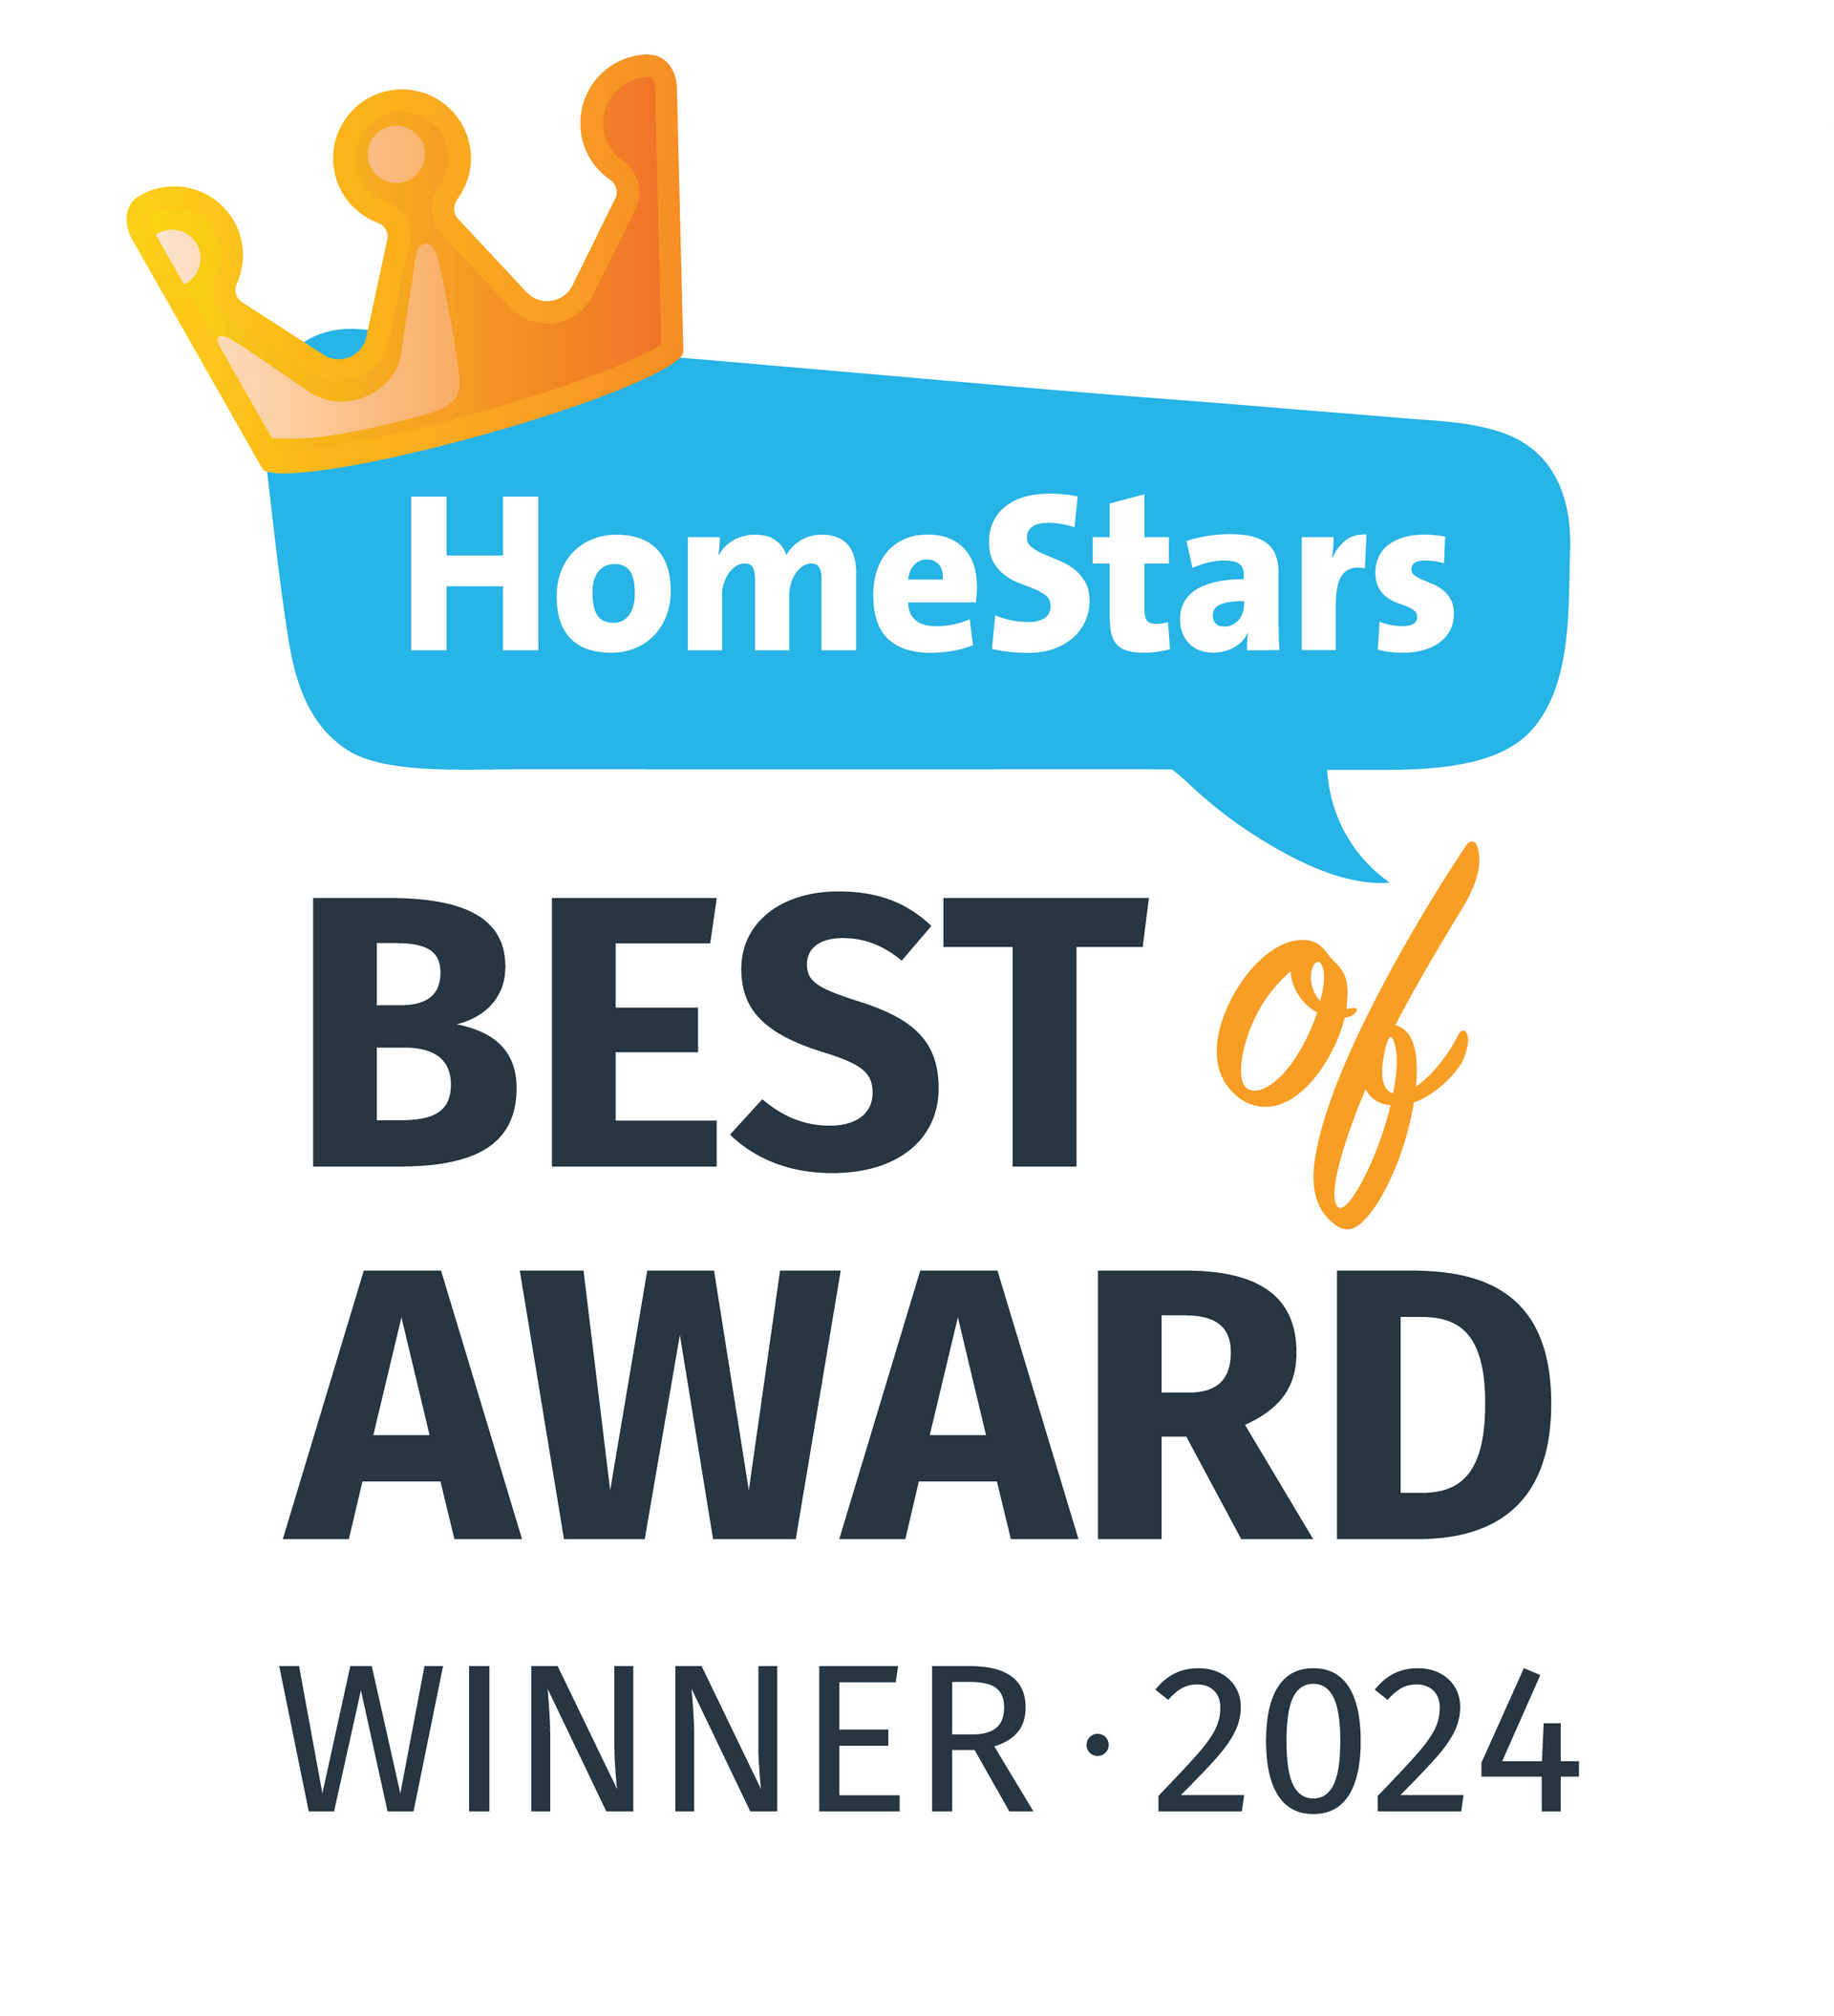 A logo for homestars best of award winner 2024